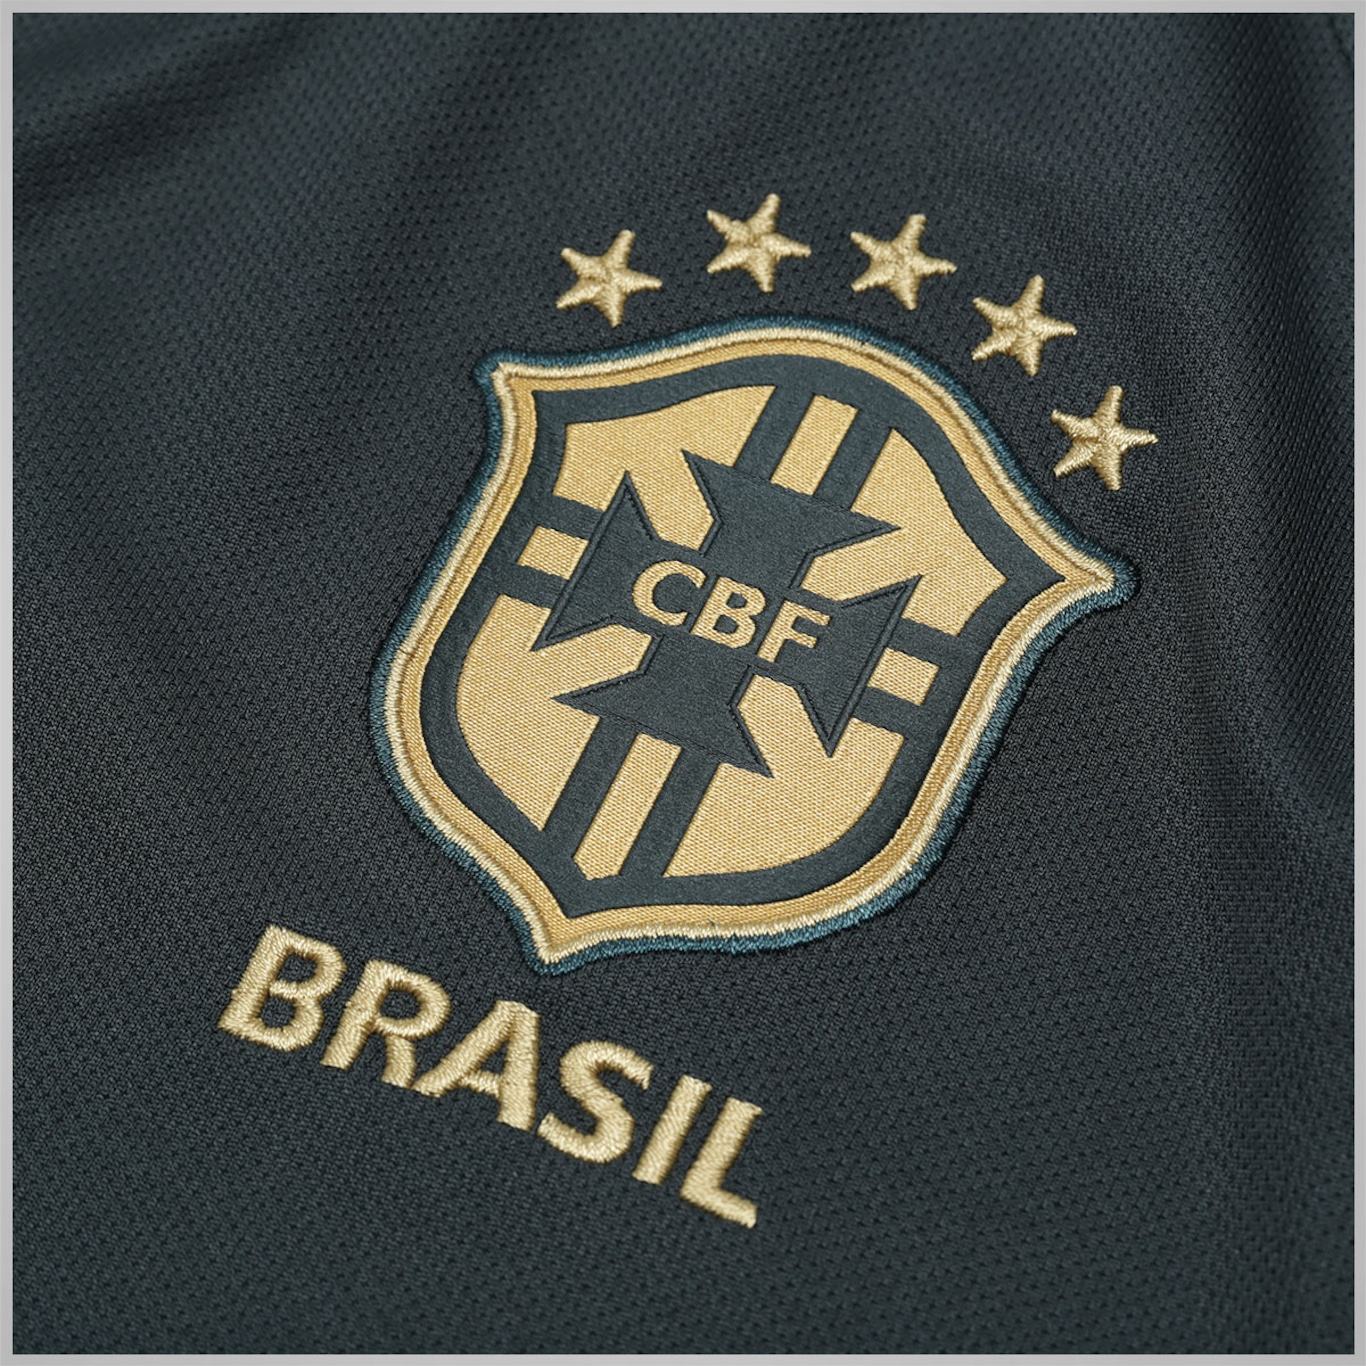 Camisa Brasil CBF III Torcedor Nike 17/2018 Masculina